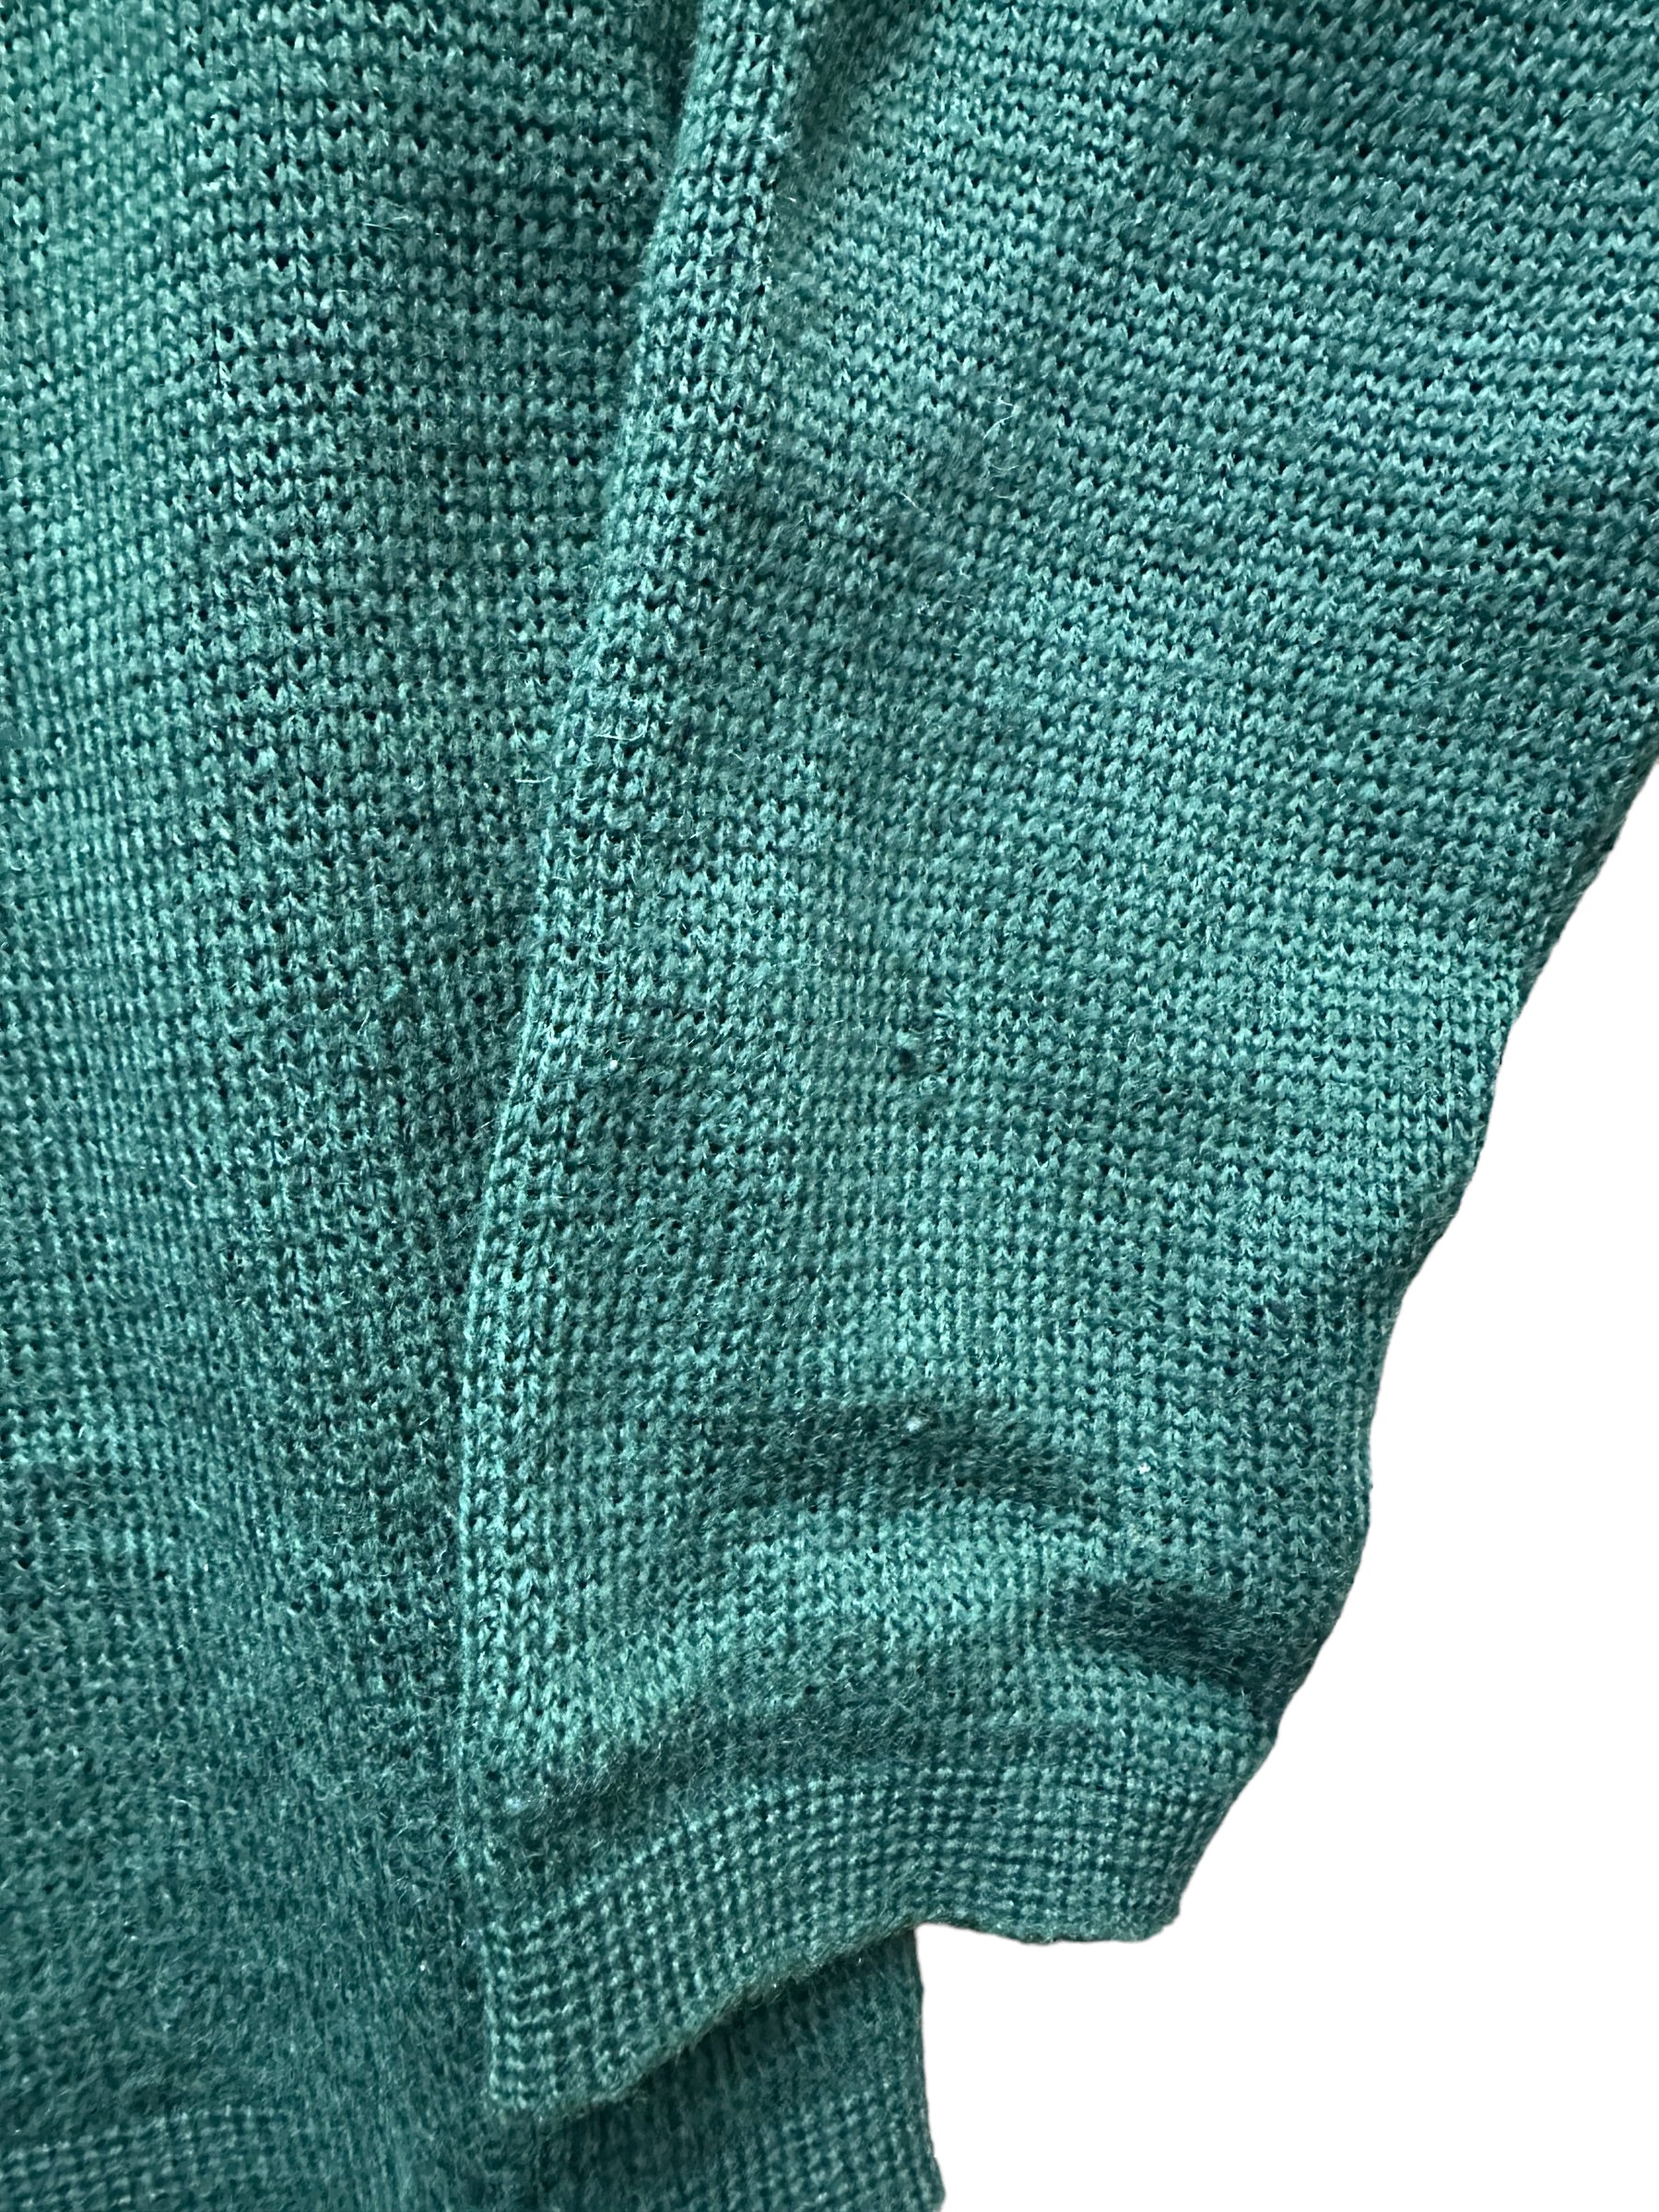 Small Snag on Sleeve of Vintage Demetre Wool Ski Sweater SZ M |  Vintage Sweaters Seattle | Barn Owl Vintage Seattle